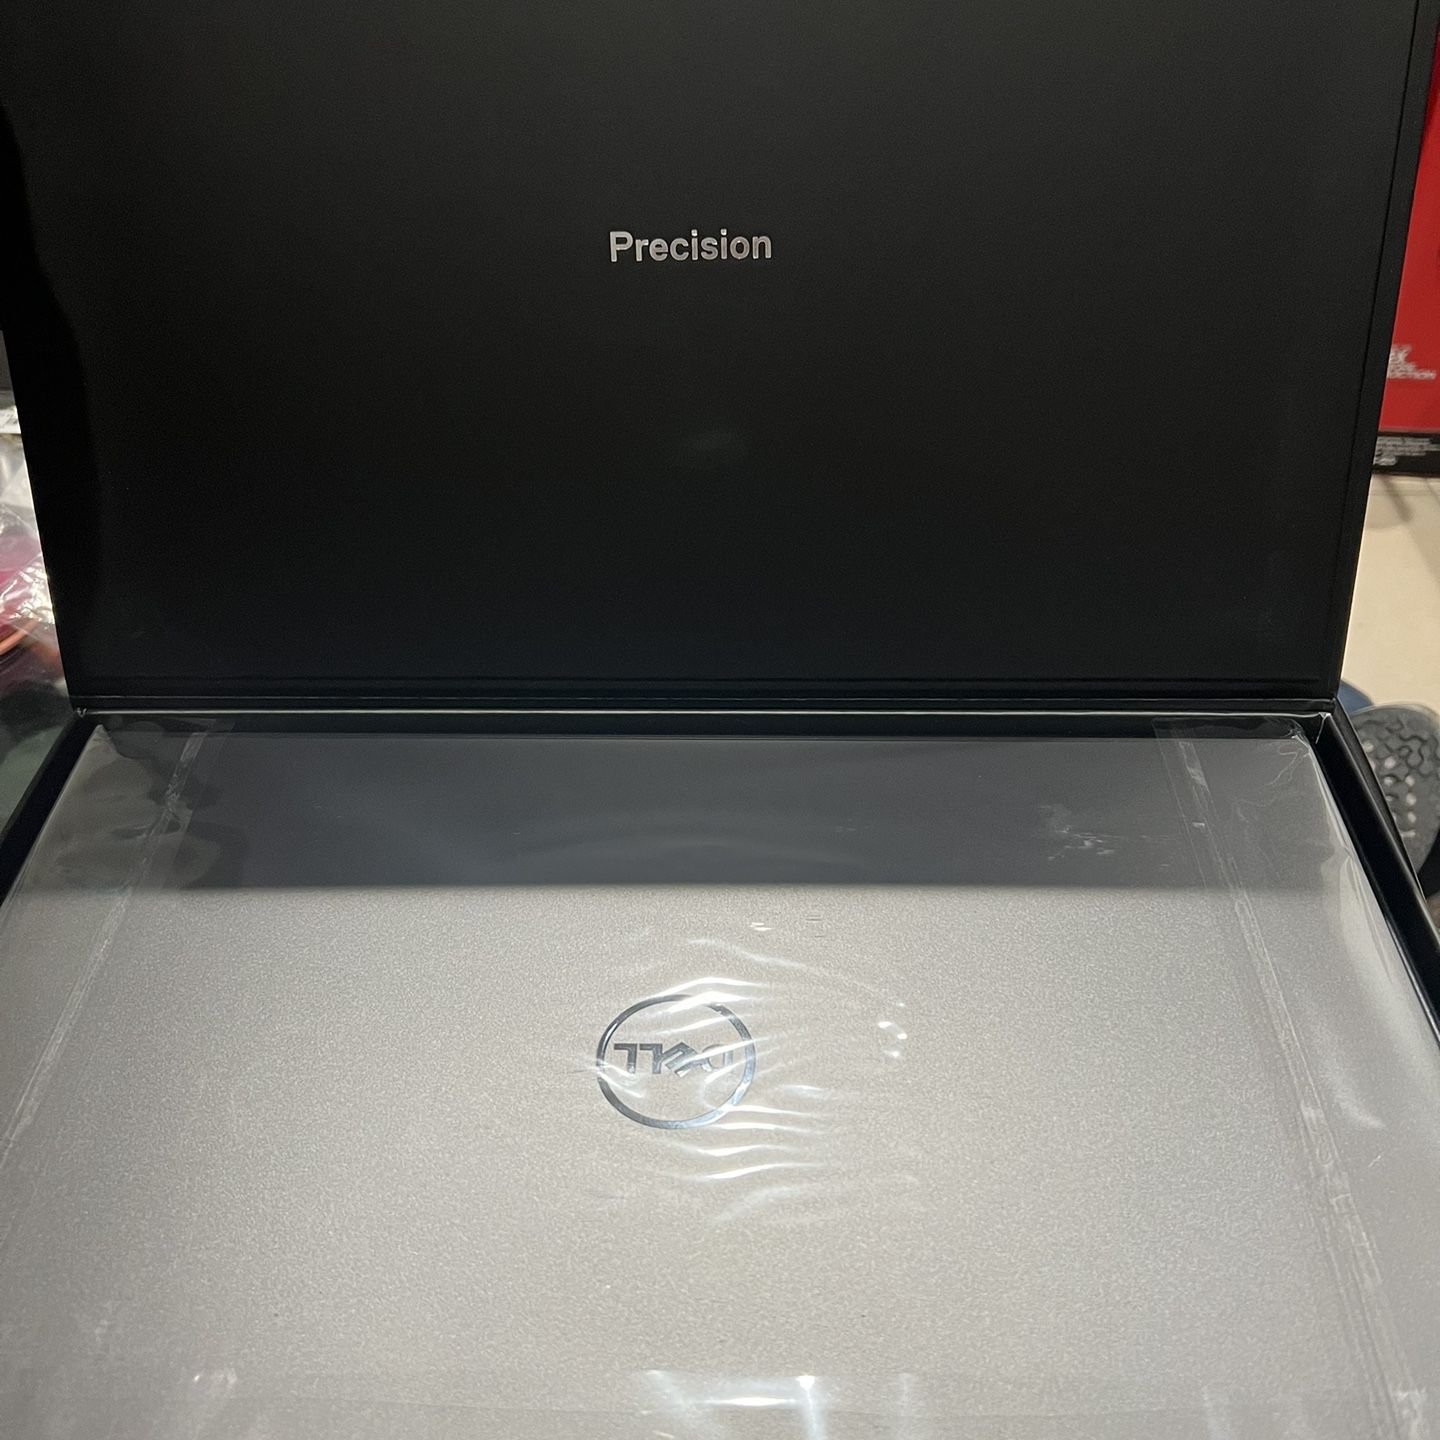 Laptop Dell Precision 5760 for Sale in Chula Vista, CA OfferUp